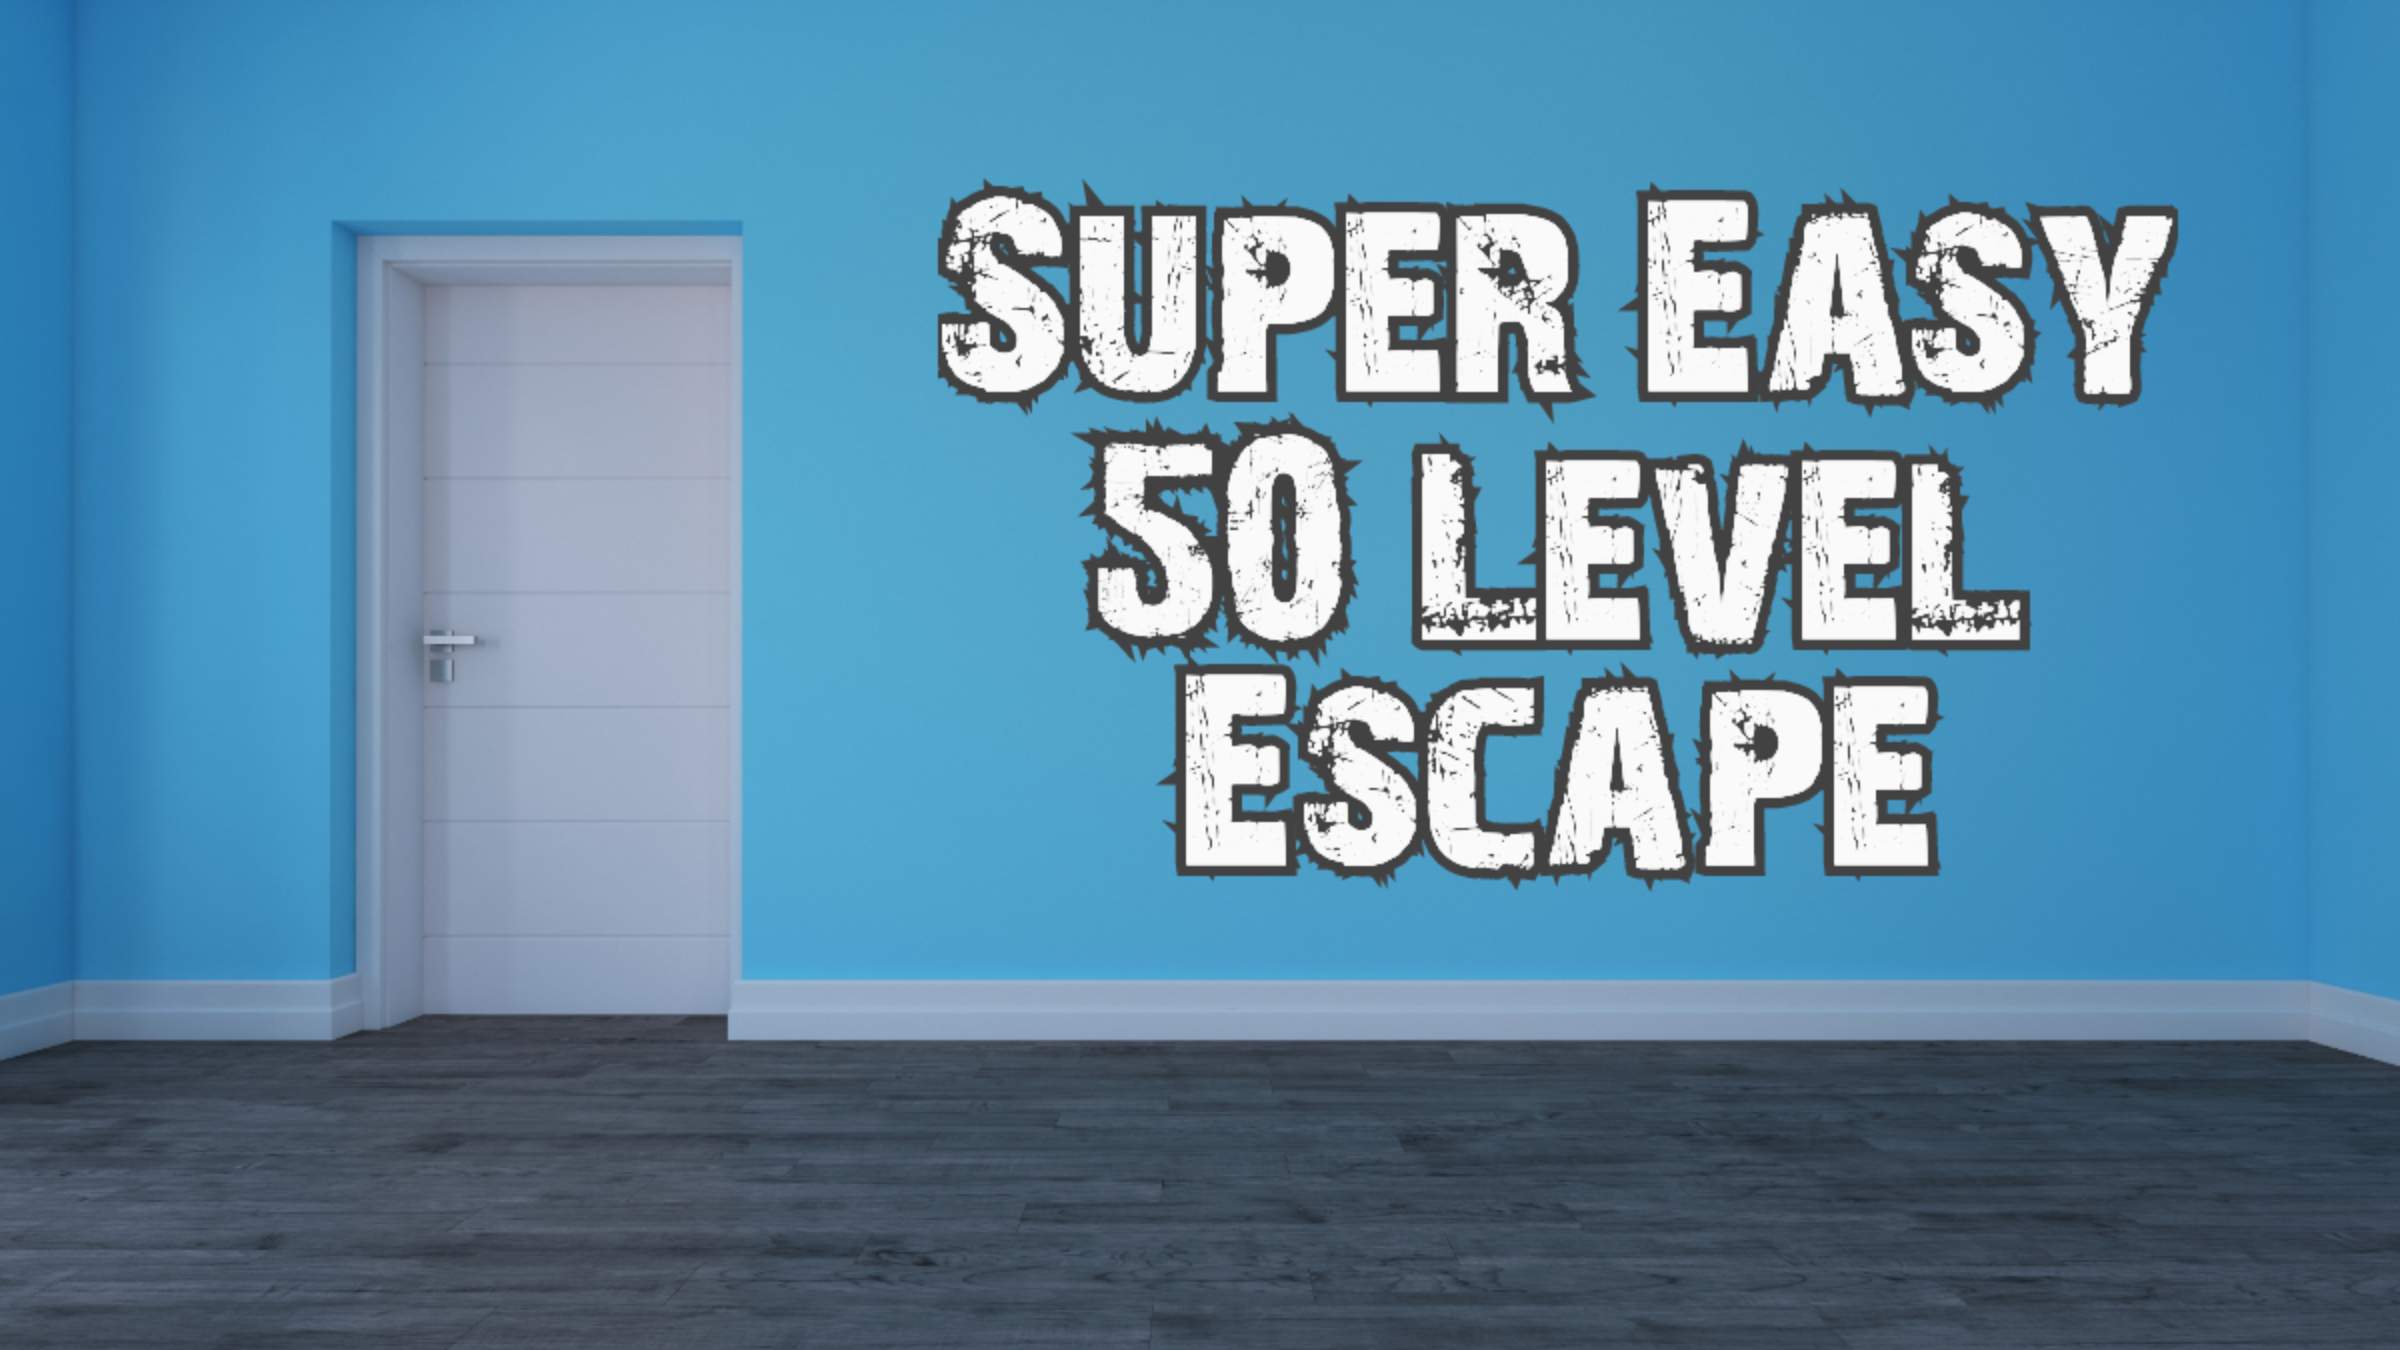 Super Easy 50 Level Escape